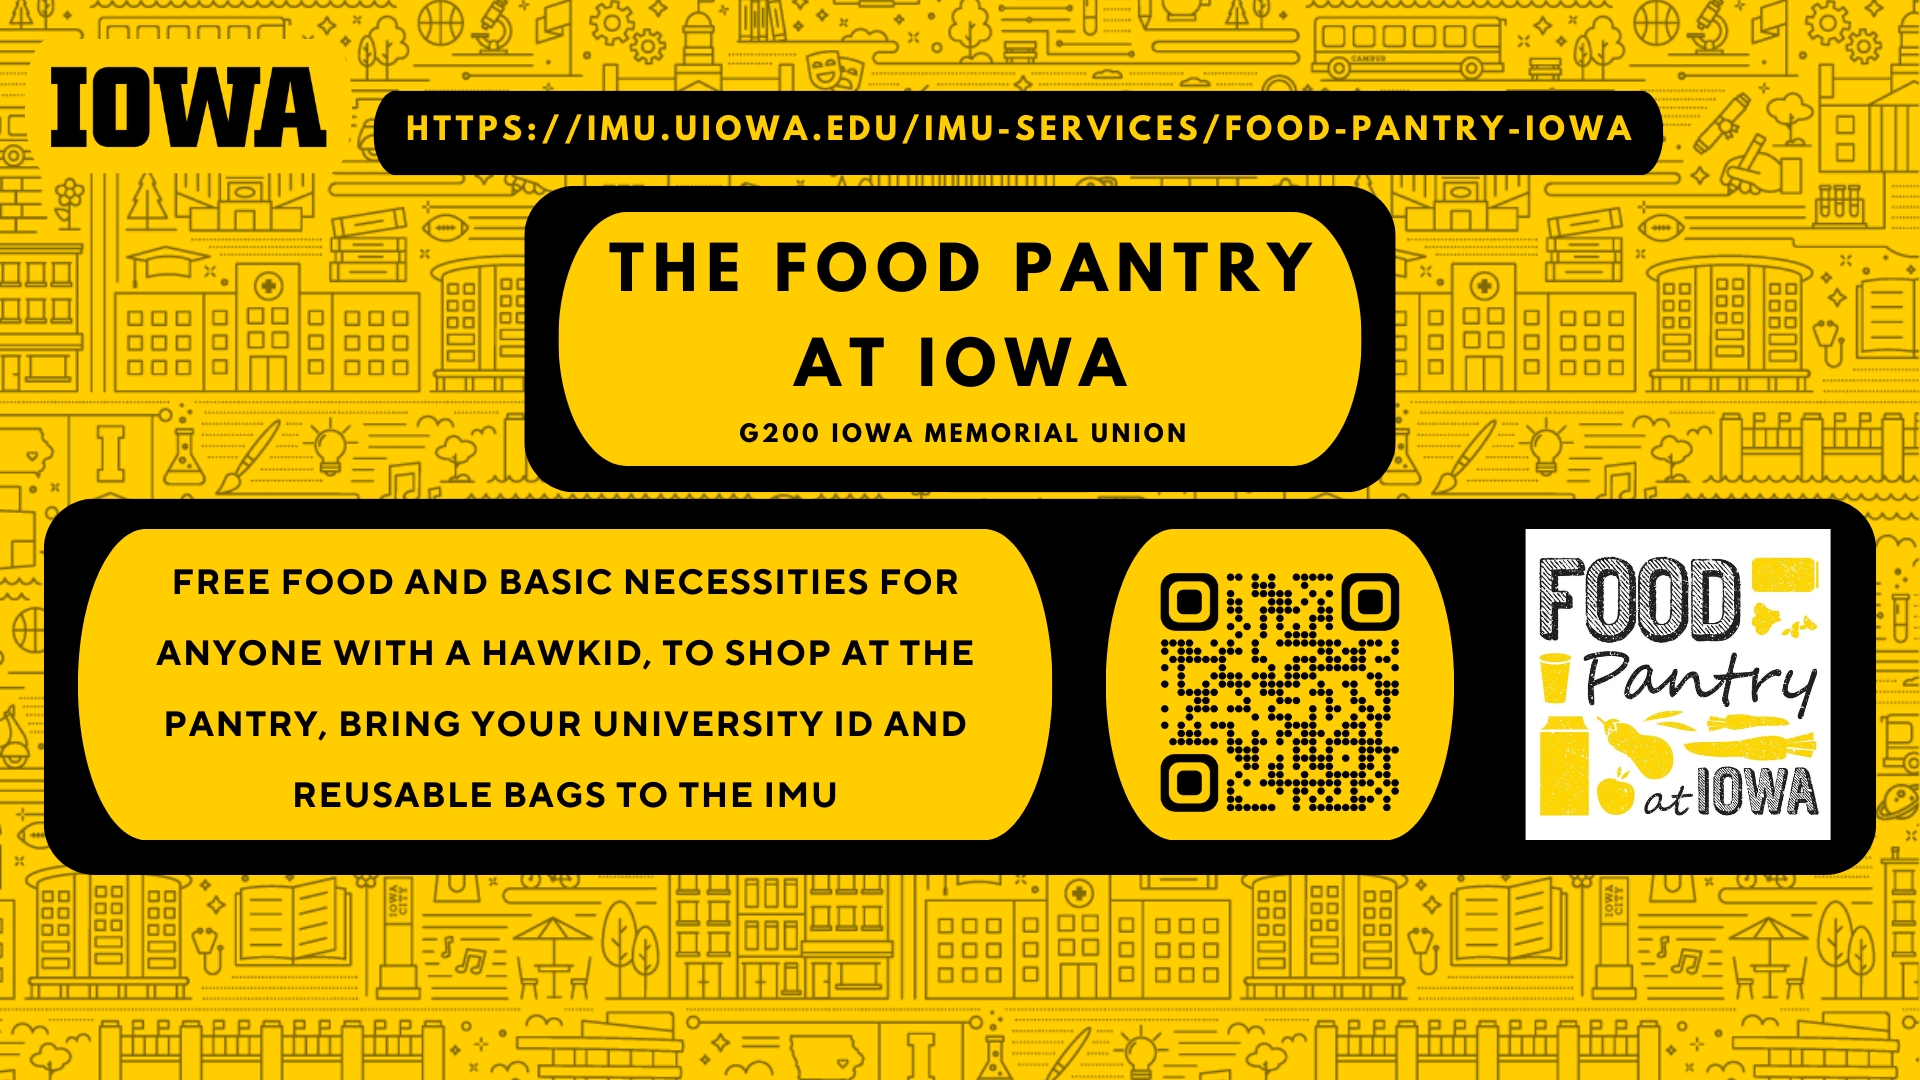 Food Pantry at Iowa CBE